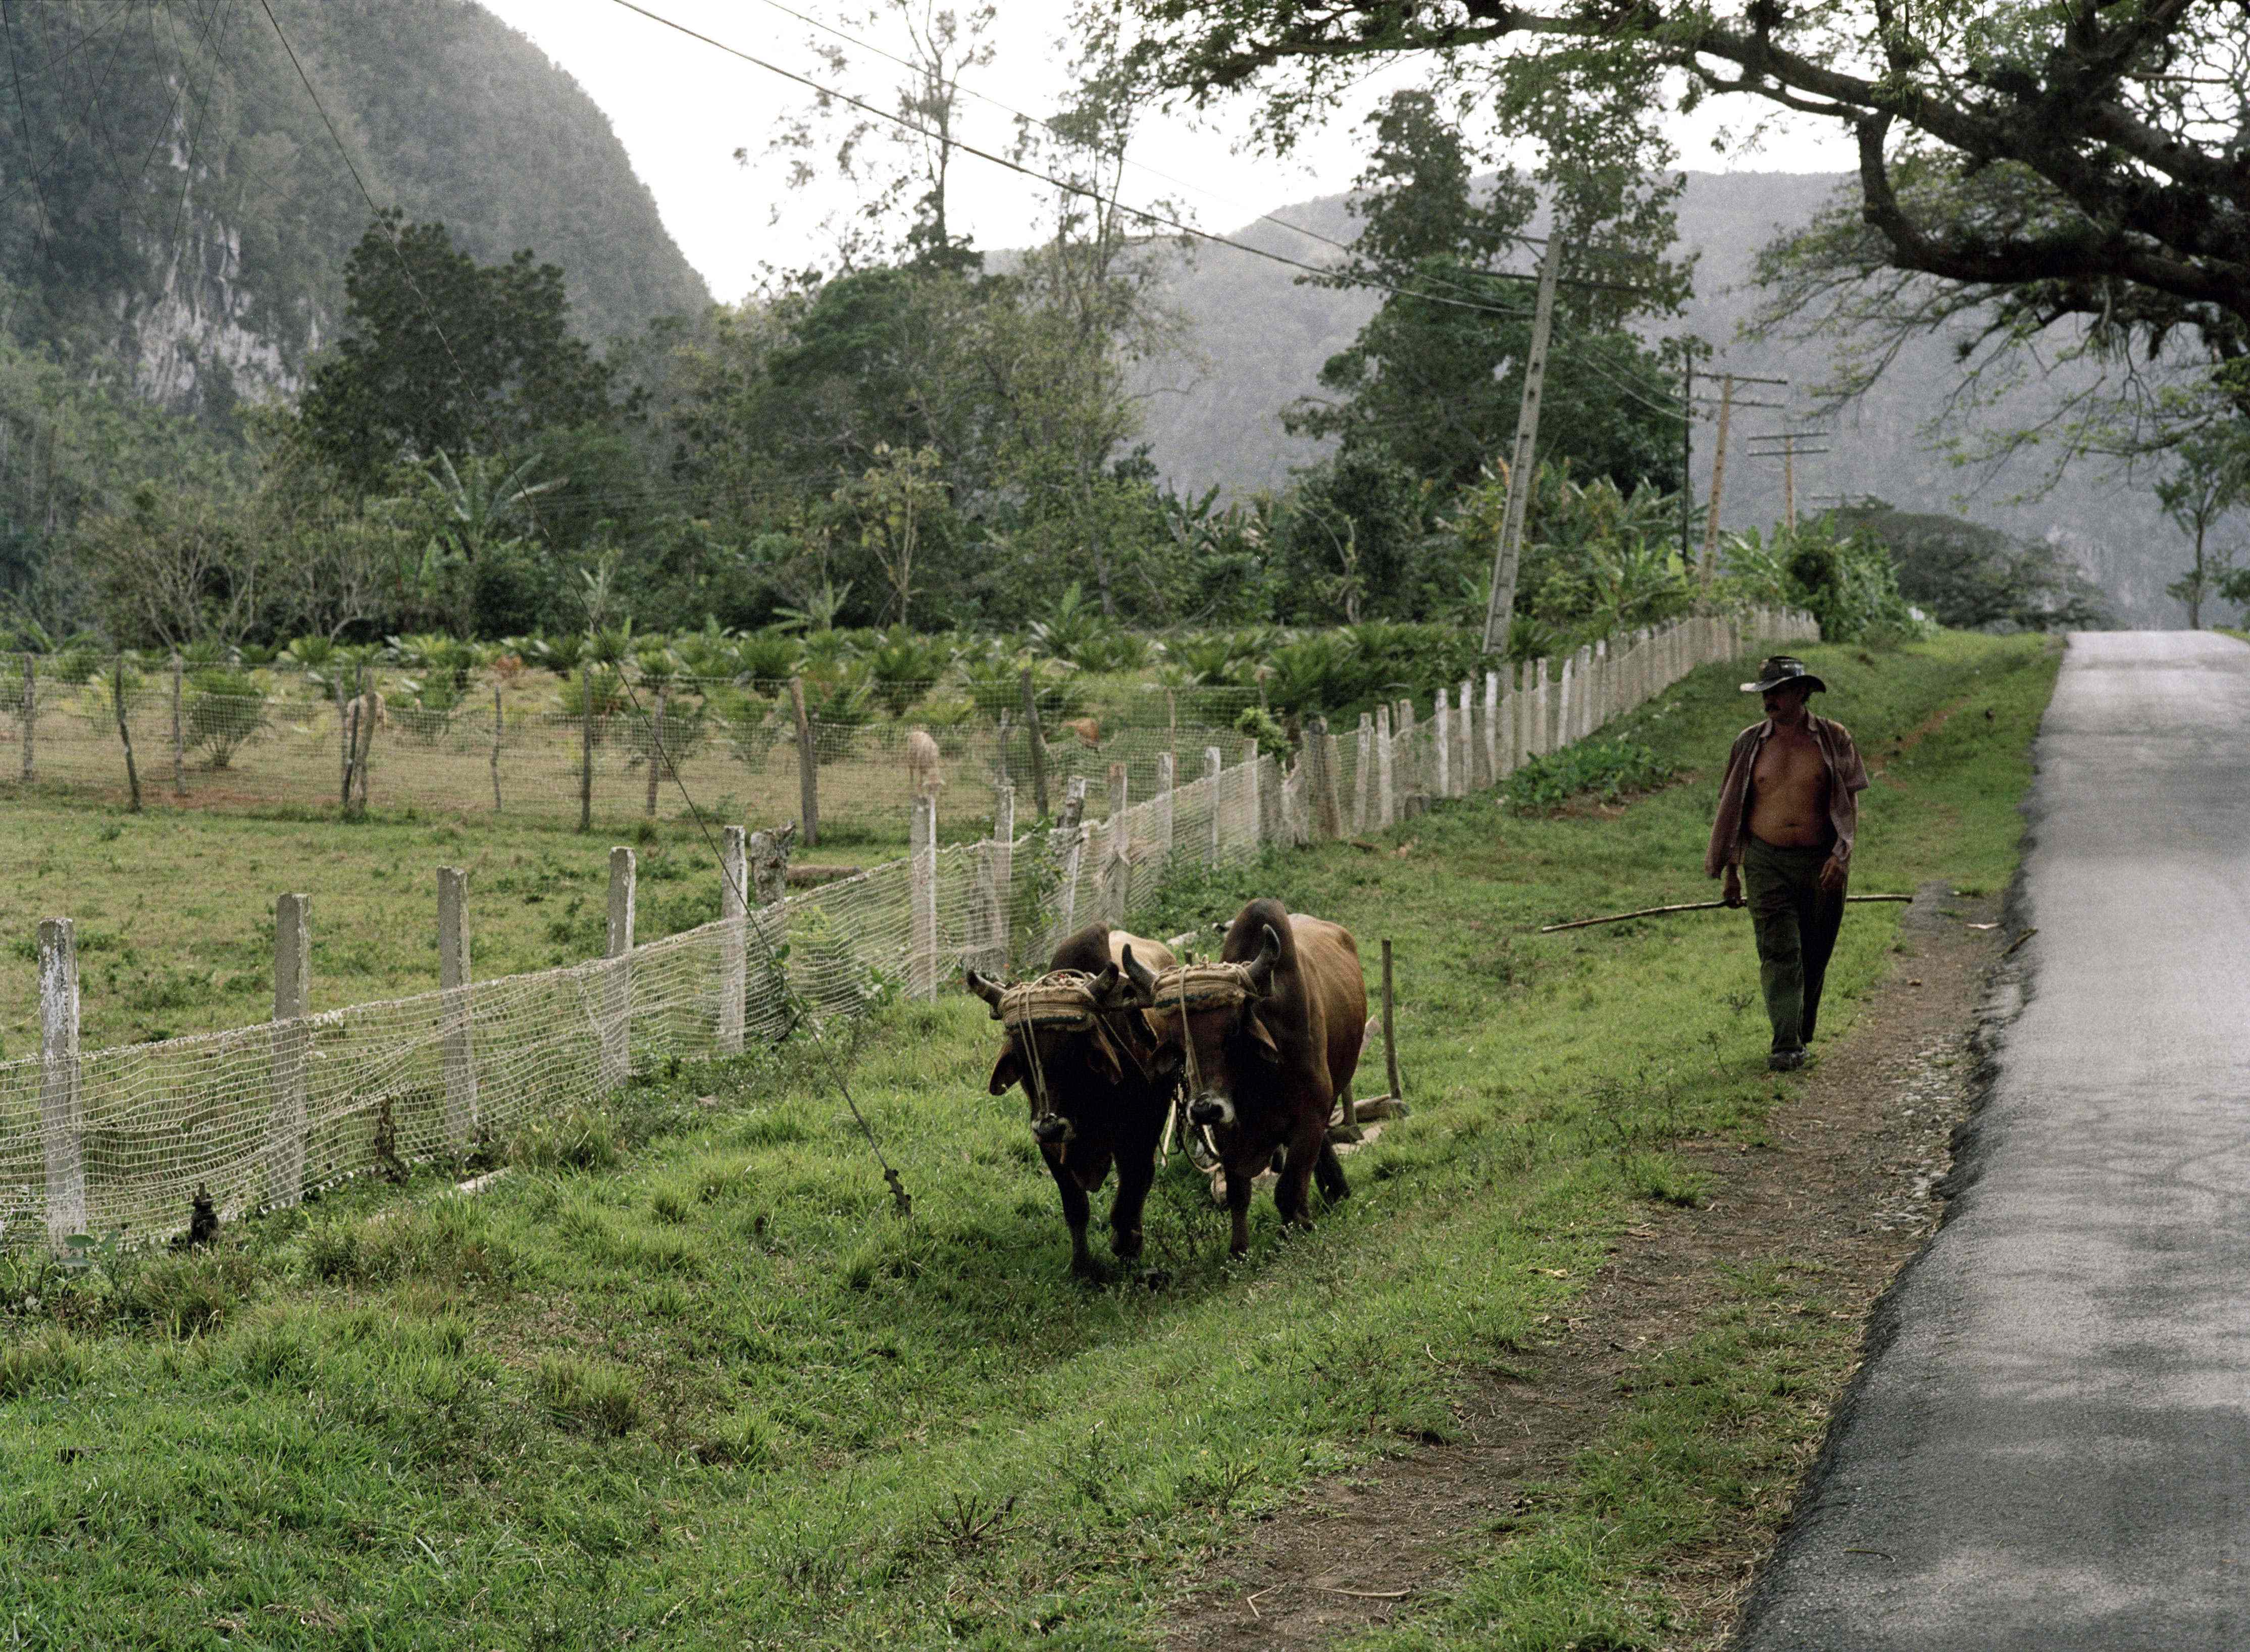 Un agricoltore e due mucche camminano lungo una strada nei pressi del centro turistico Vinales (Infophoto)